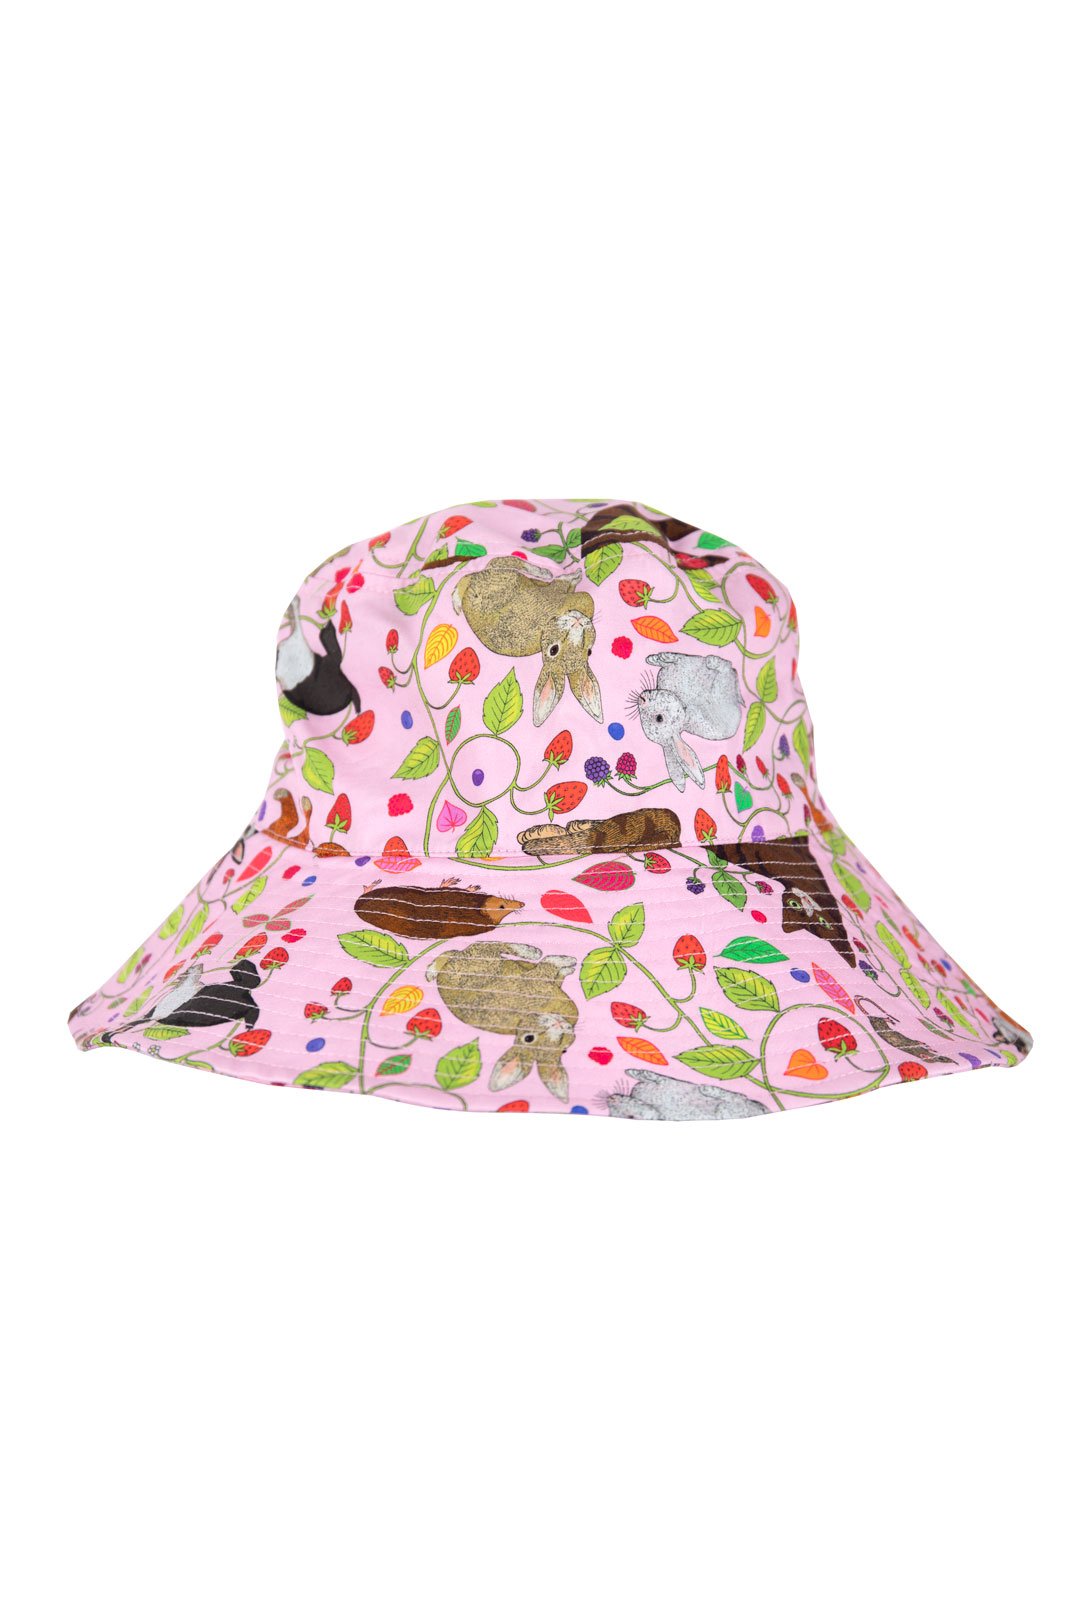 Karen Mabon Strawberry Fields Forever Hat